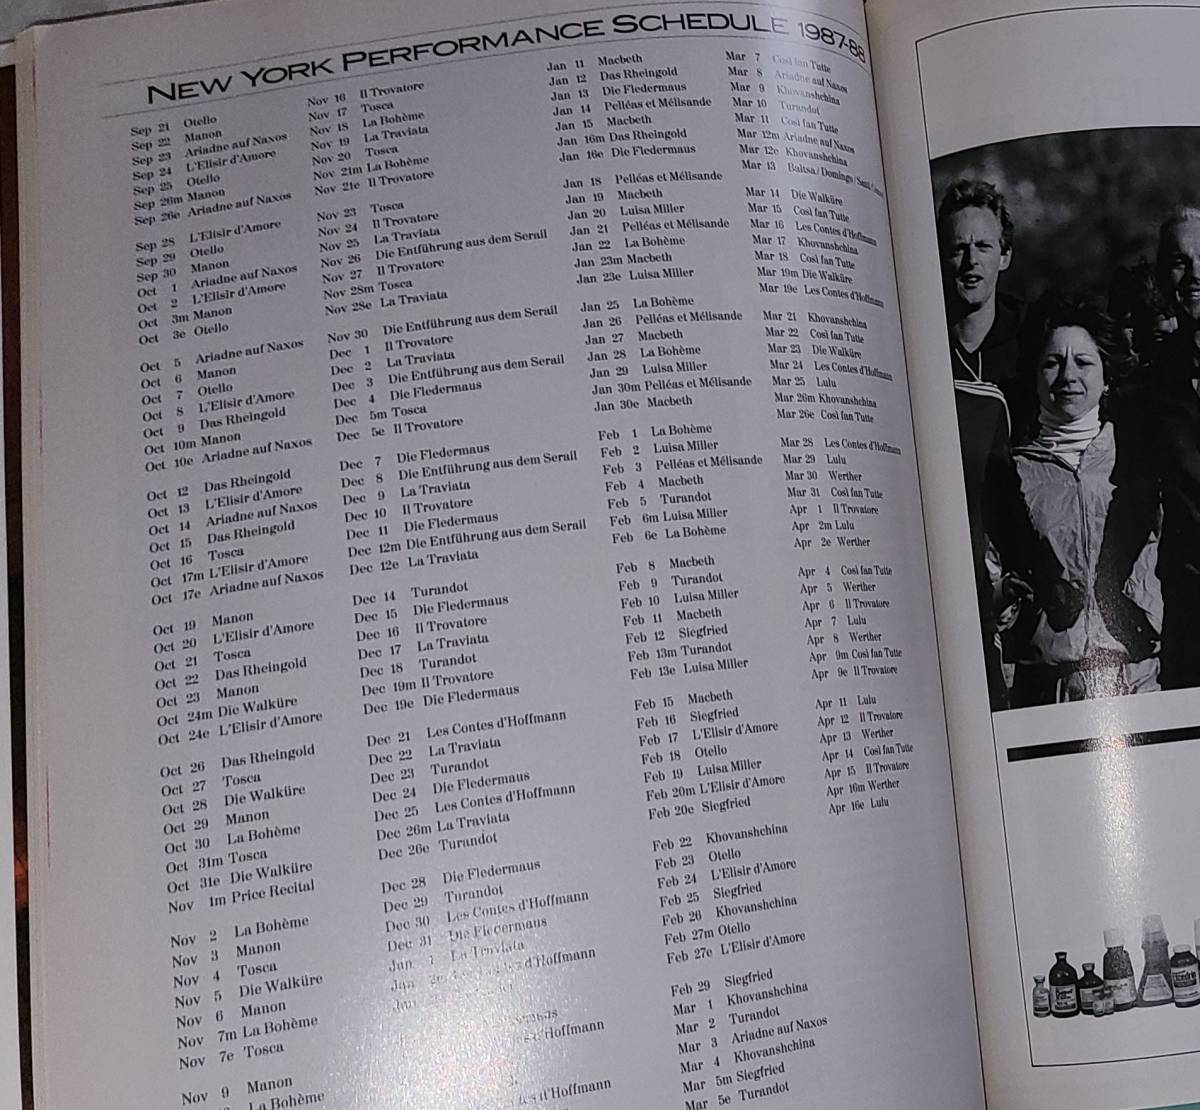 メトロポリタン・オペラ シーズンブック 1987-88 METROPOLITAN OPERA SEASON BOOK